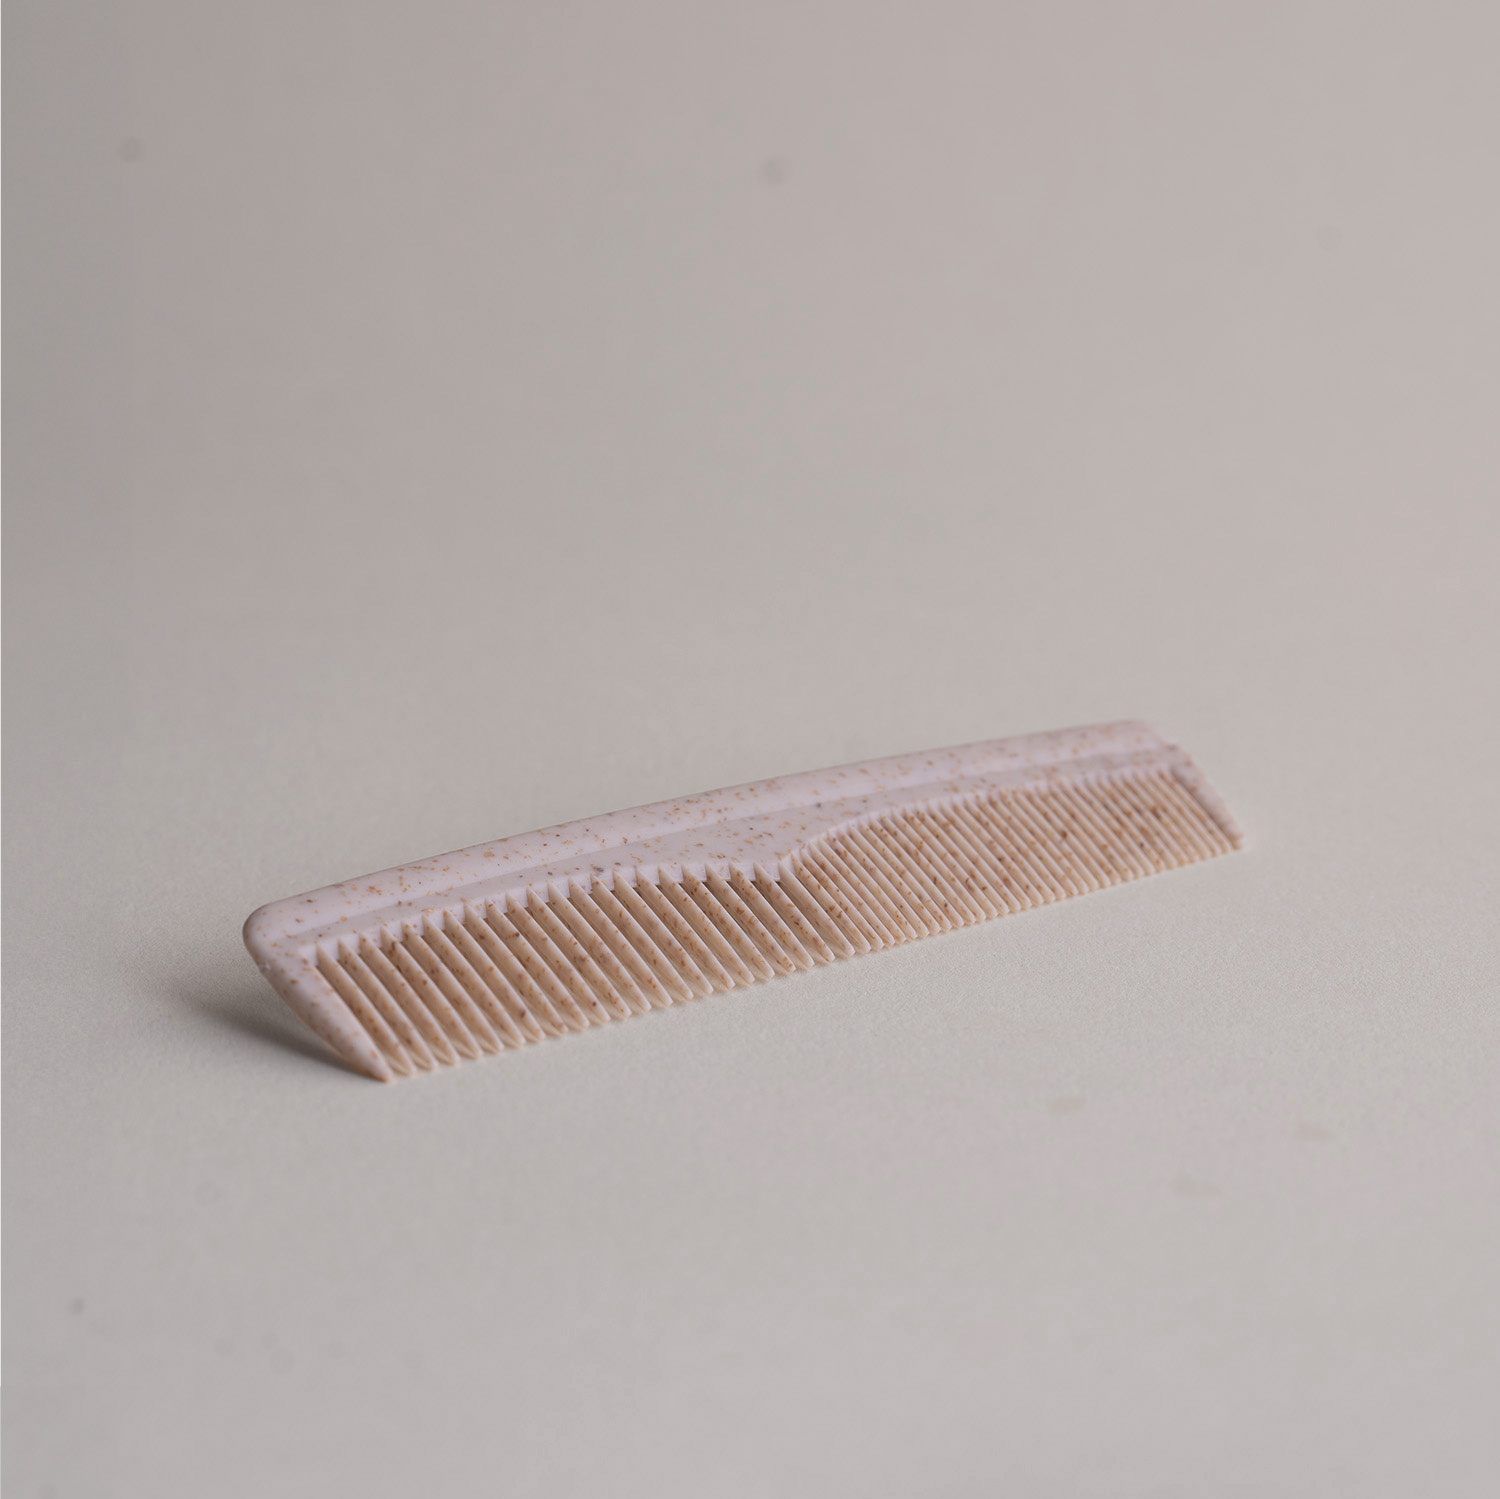 Malý plastový hřeben na vlasy s přídavkem drcené slámy